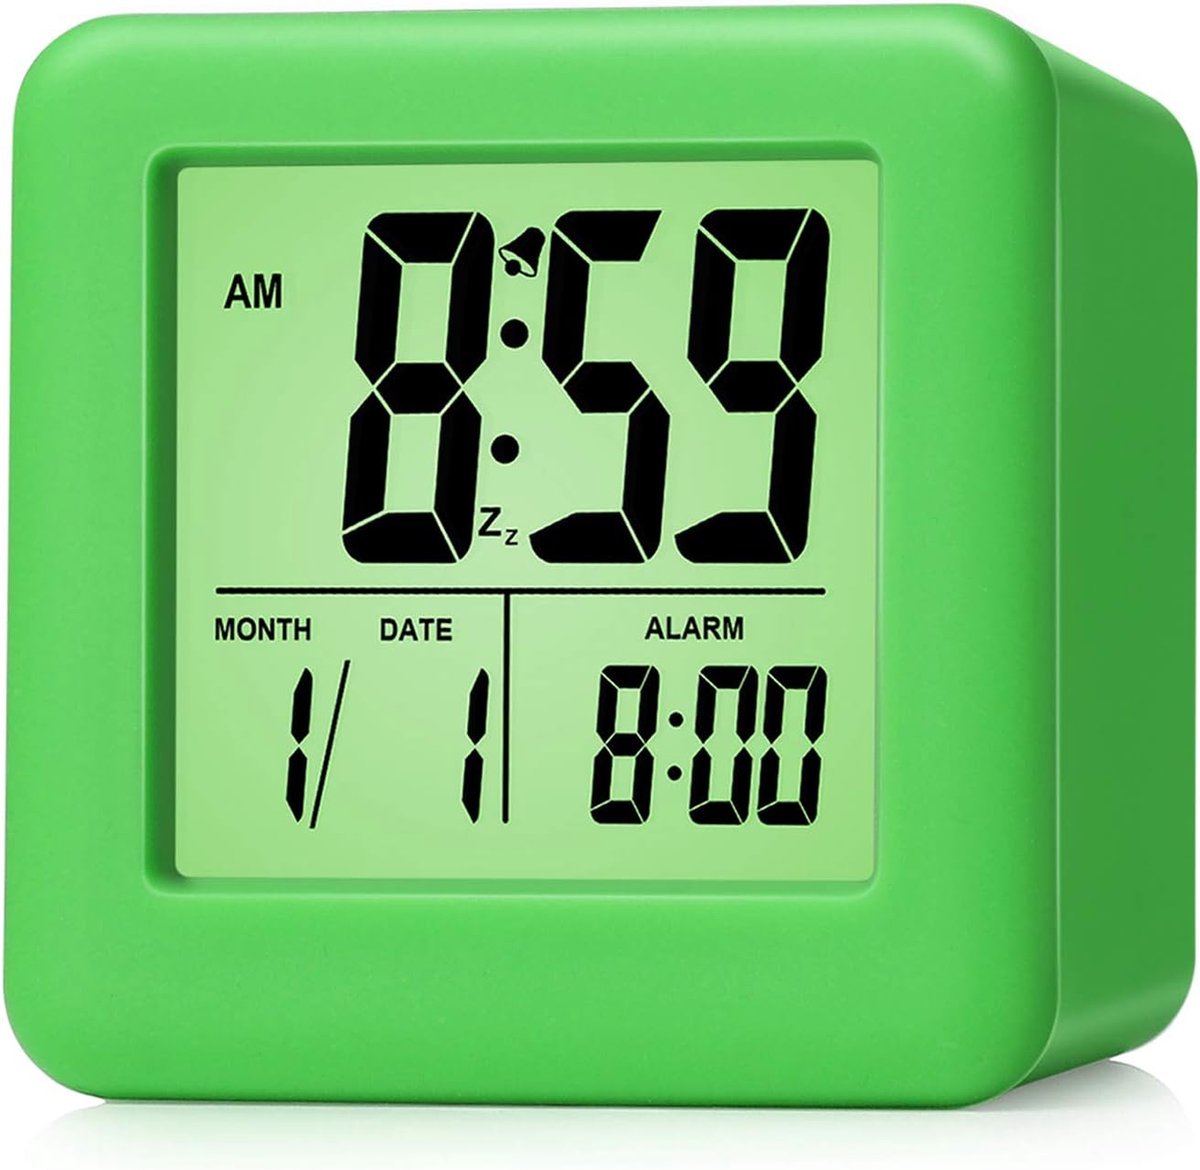 Digitale Reiswekker met Eenvoudige Instelling, Snooze, Achtergrondverlichting en Groot Display voor Tijd, Maand, Datum en Wekker (Groen)